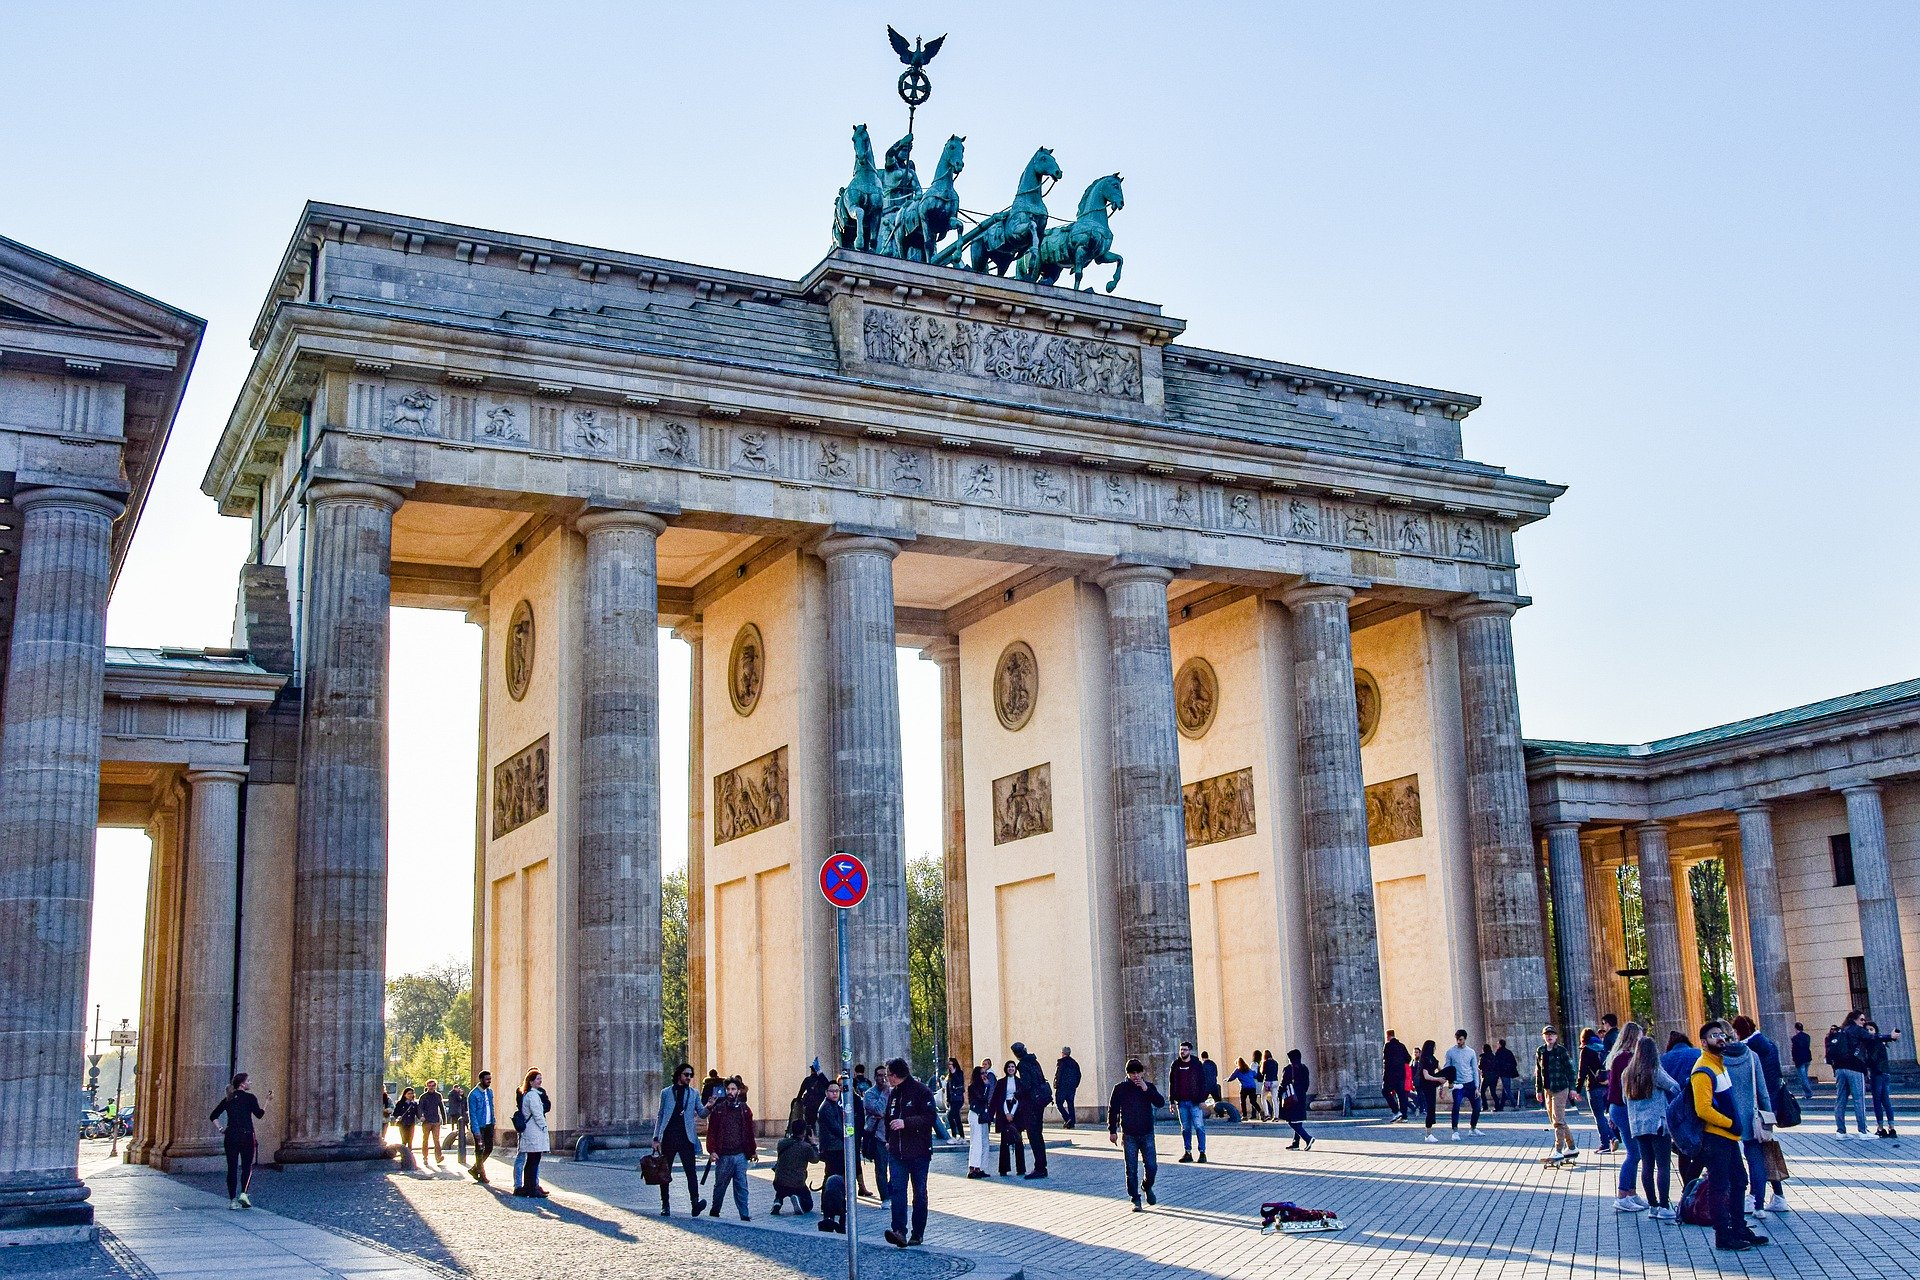 Duitsland verlaagt de btw-tarieven voorlopig tot eind 2020